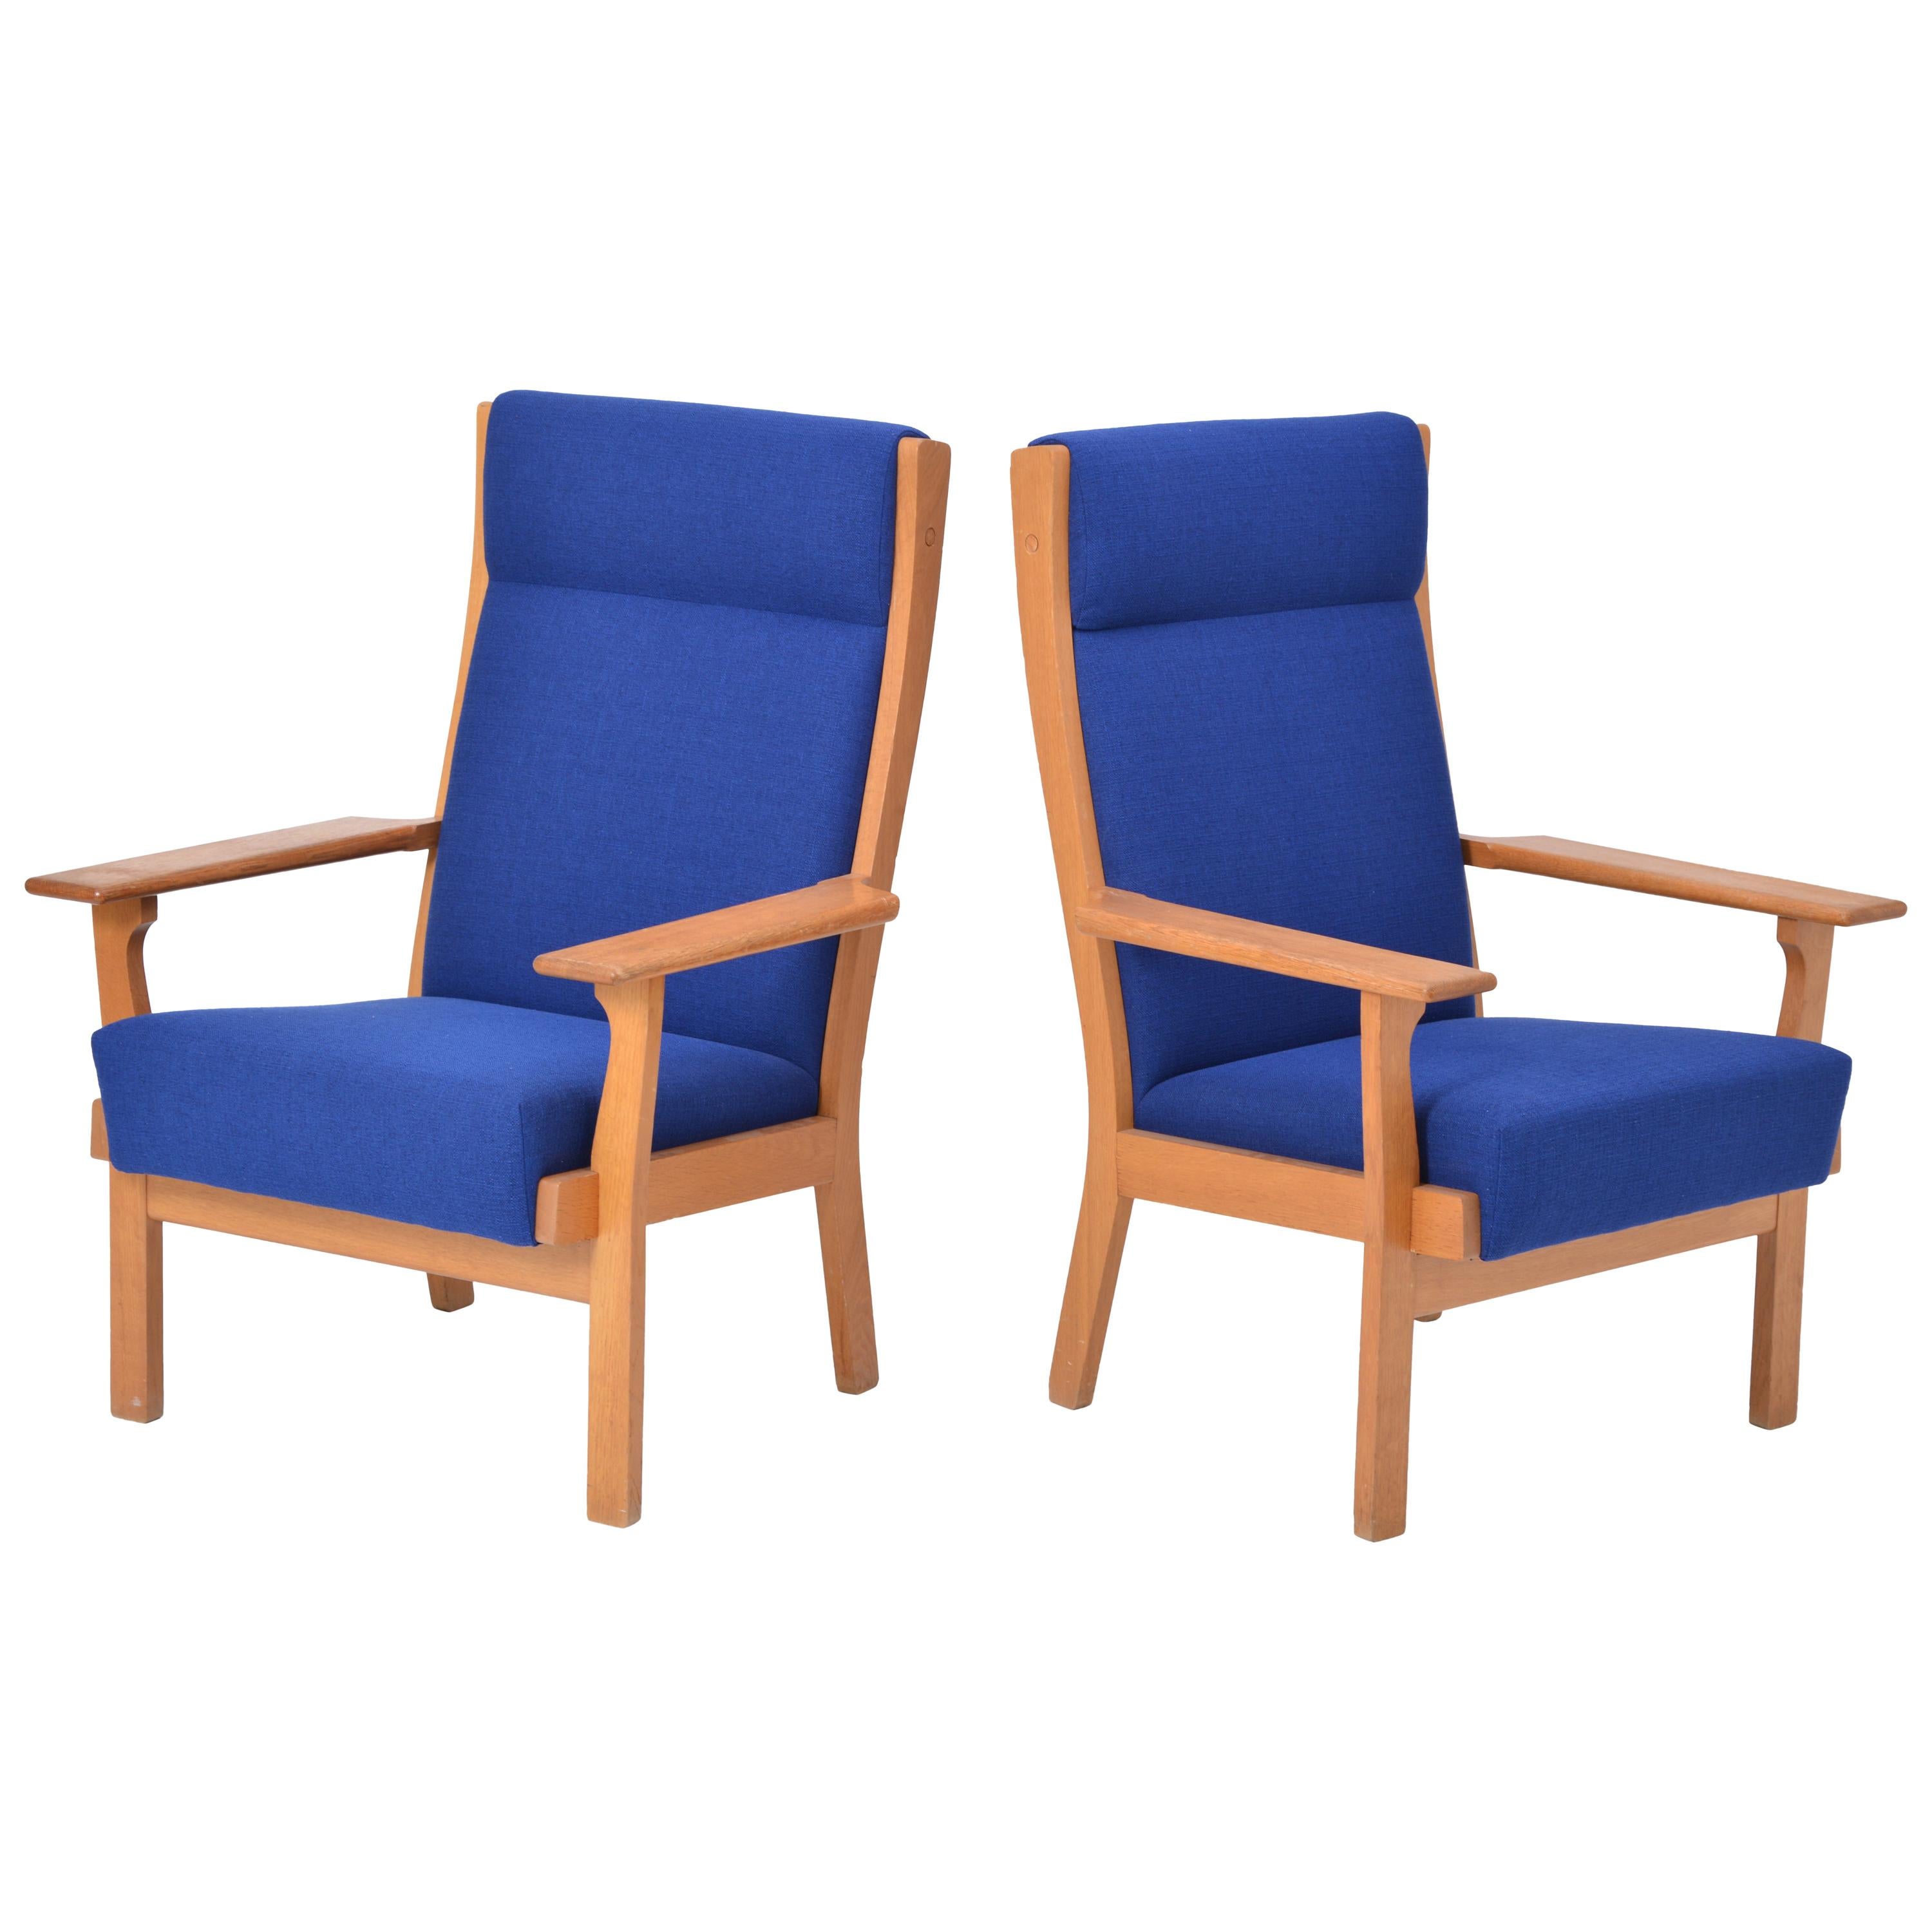 Ensemble de deux chaises GE 181 a danoises modernes du milieu du siècle par Hans Wegner pour GETAMA

Cette paire de fauteuils (modèle GE 181 A) a été conçue par Hans Wegner et produite avec un savoir-faire exceptionnel par la société danoise GETAMA.